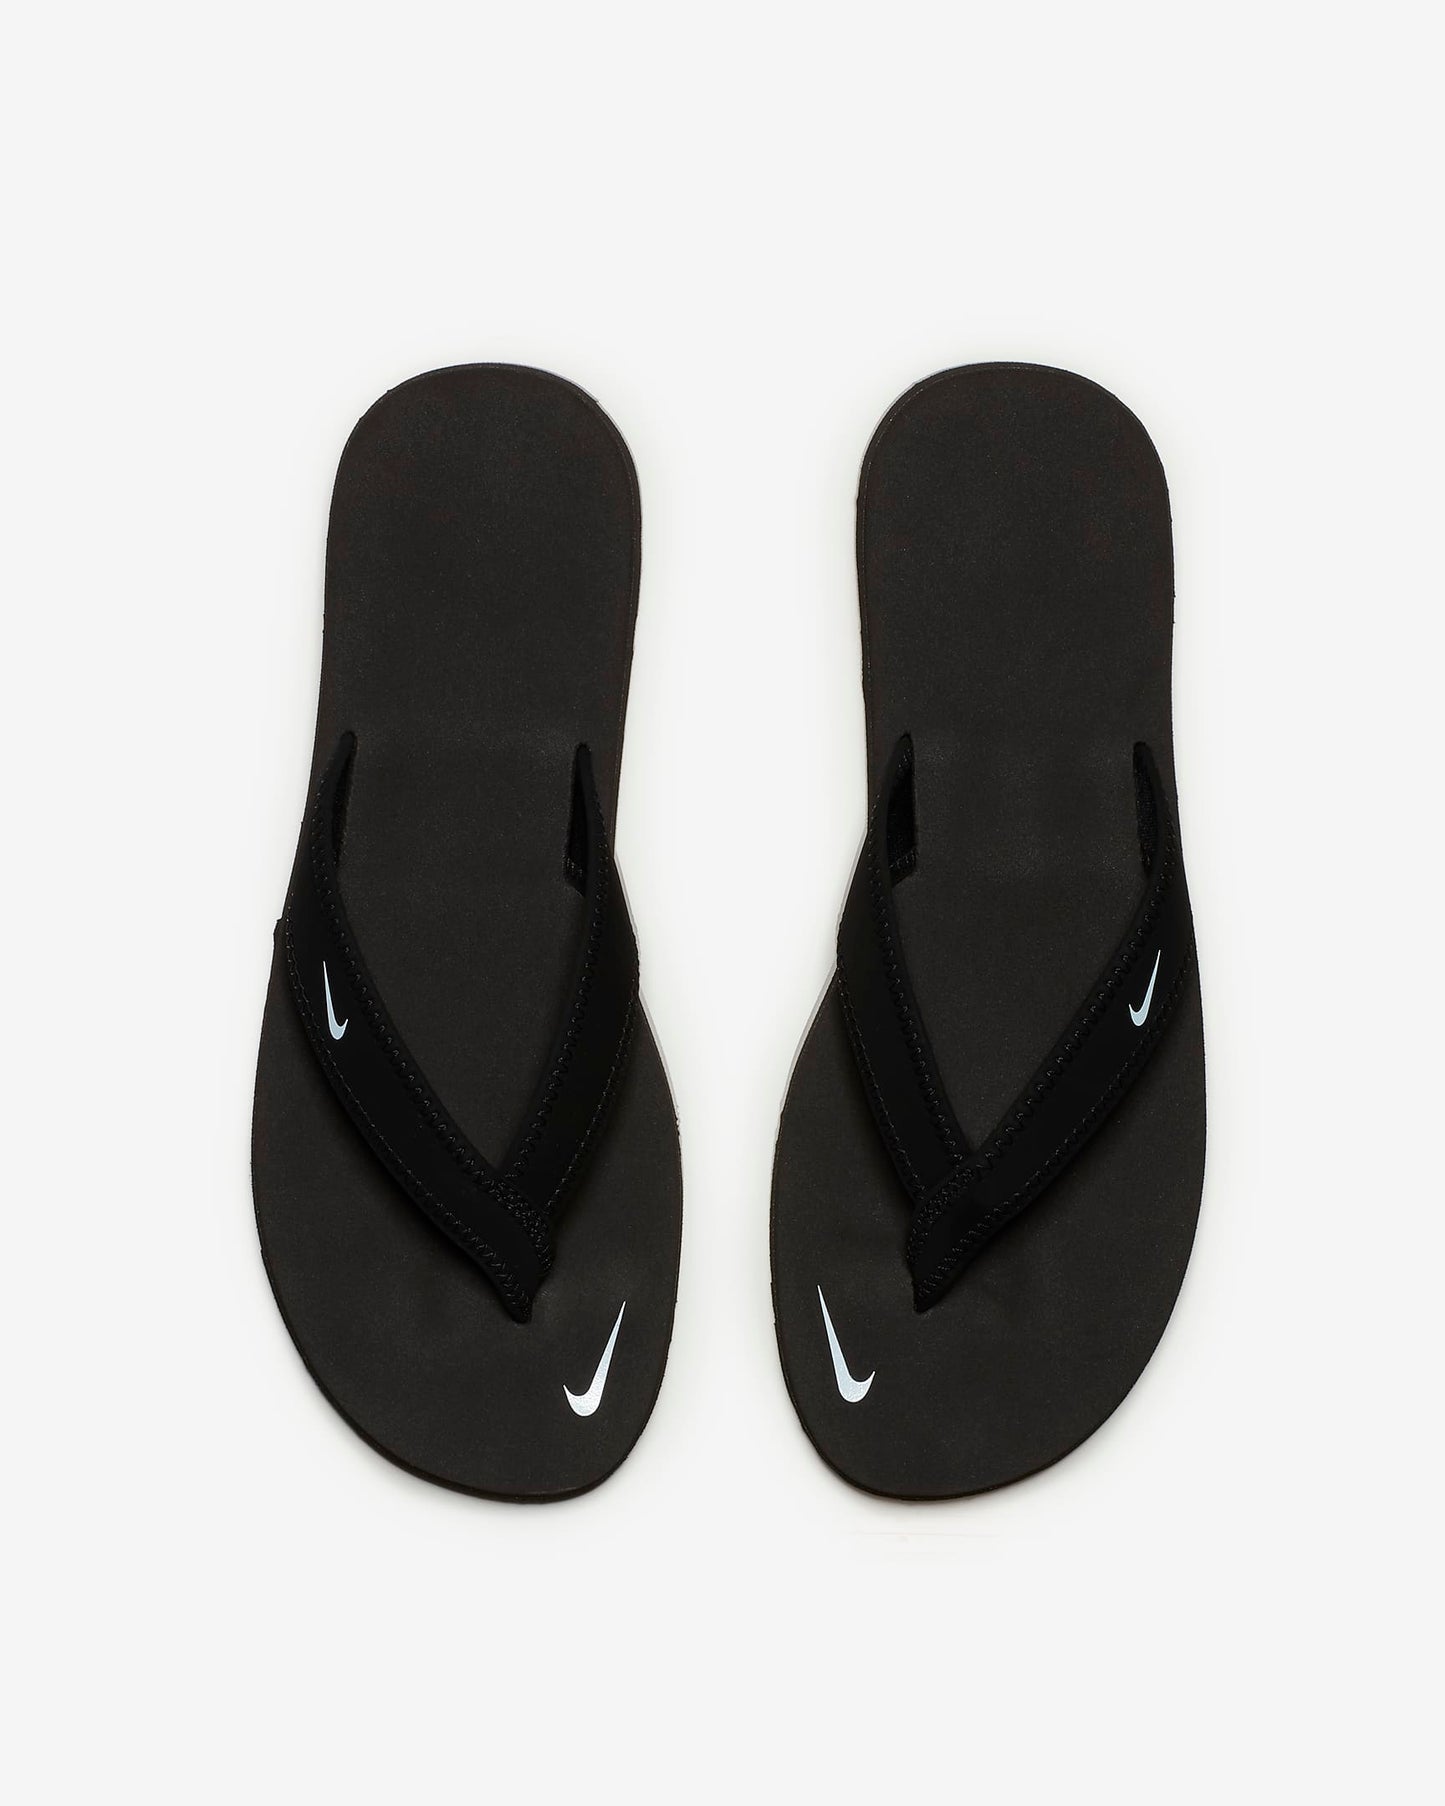 Nike Women's Celso Girl Slides, Black/White